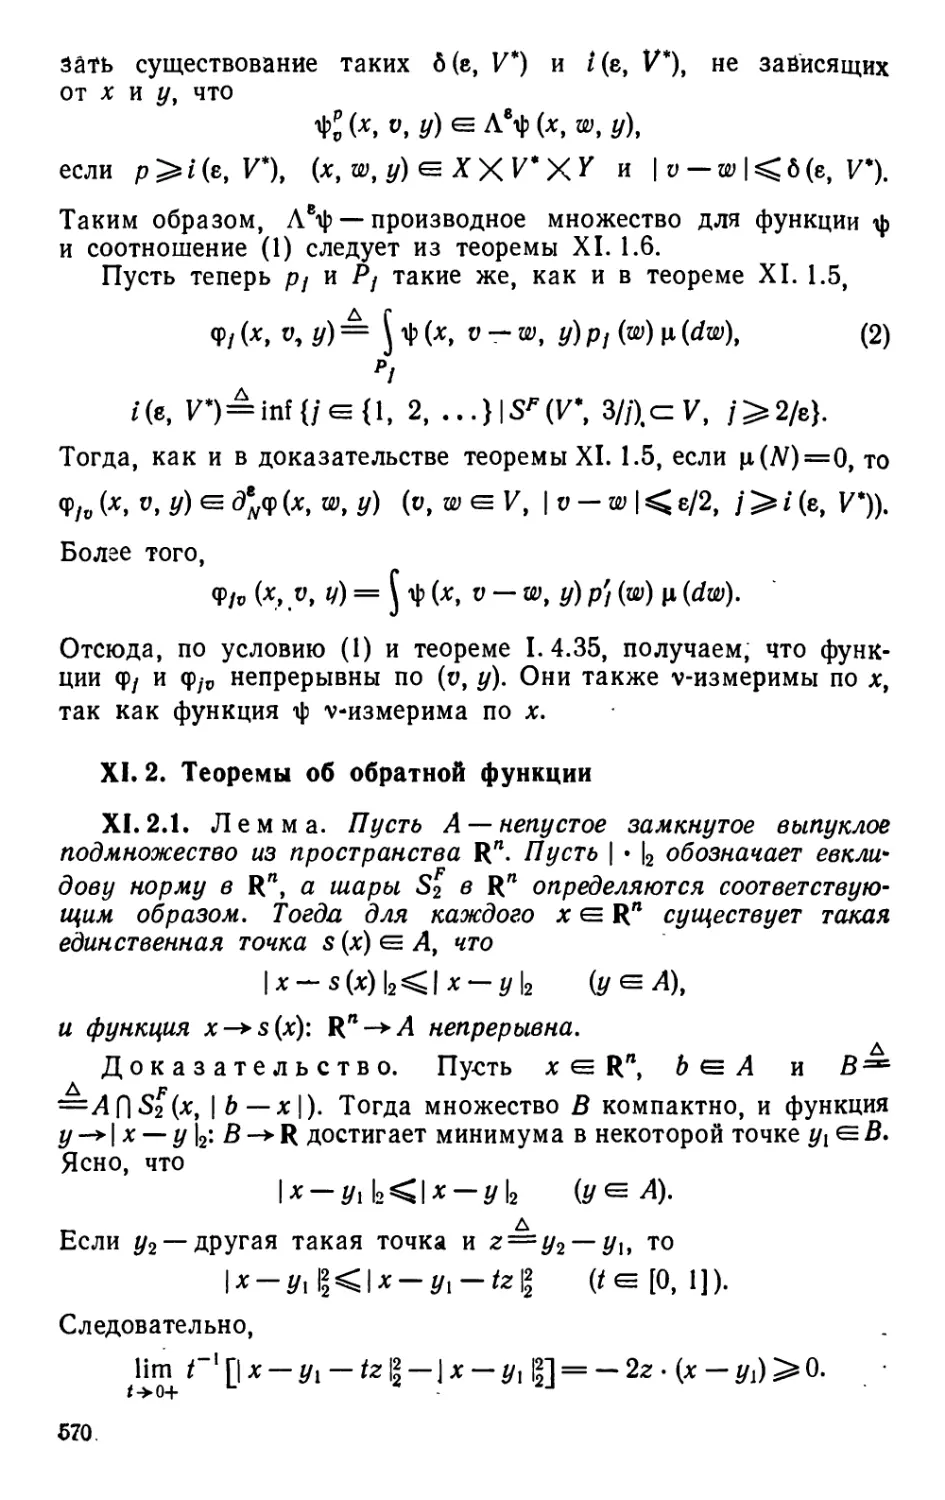 XI.2. Теоремы об обратной функции